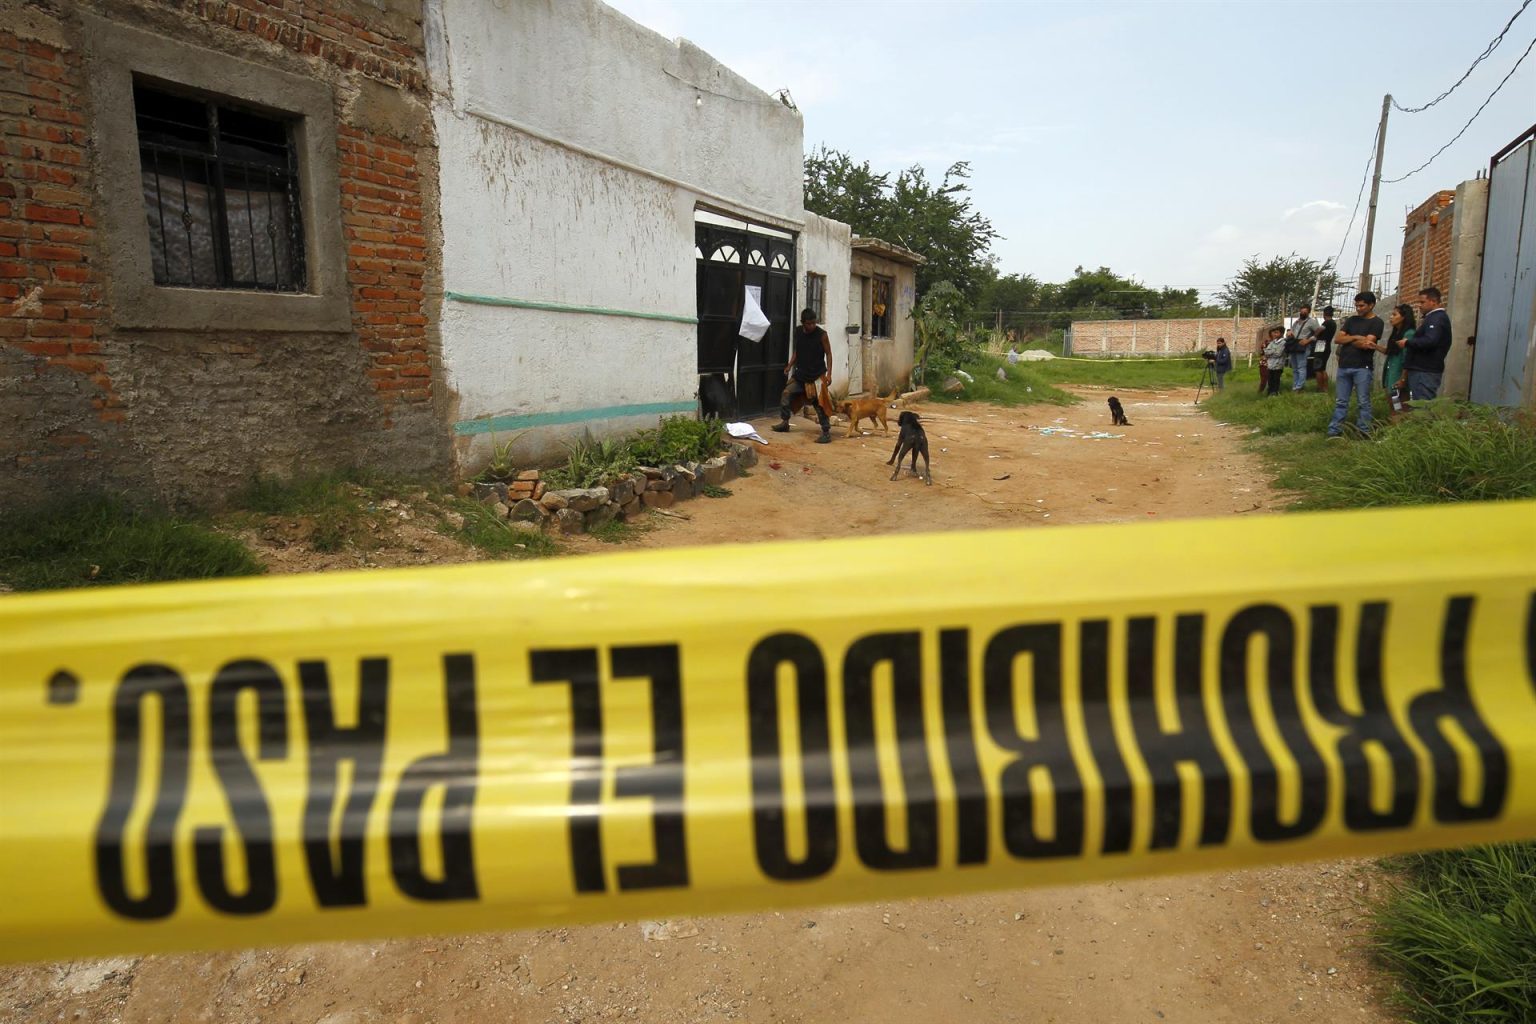 Personas observan el exterior de un centro de rehabilitación donde la madrugada de hoy, un grupo armado ejecuto a cinco hombres y una mujer, en la ciudad de Tlaquepaque, estado de Jalisco (México). EFE/ Francisco Guasco